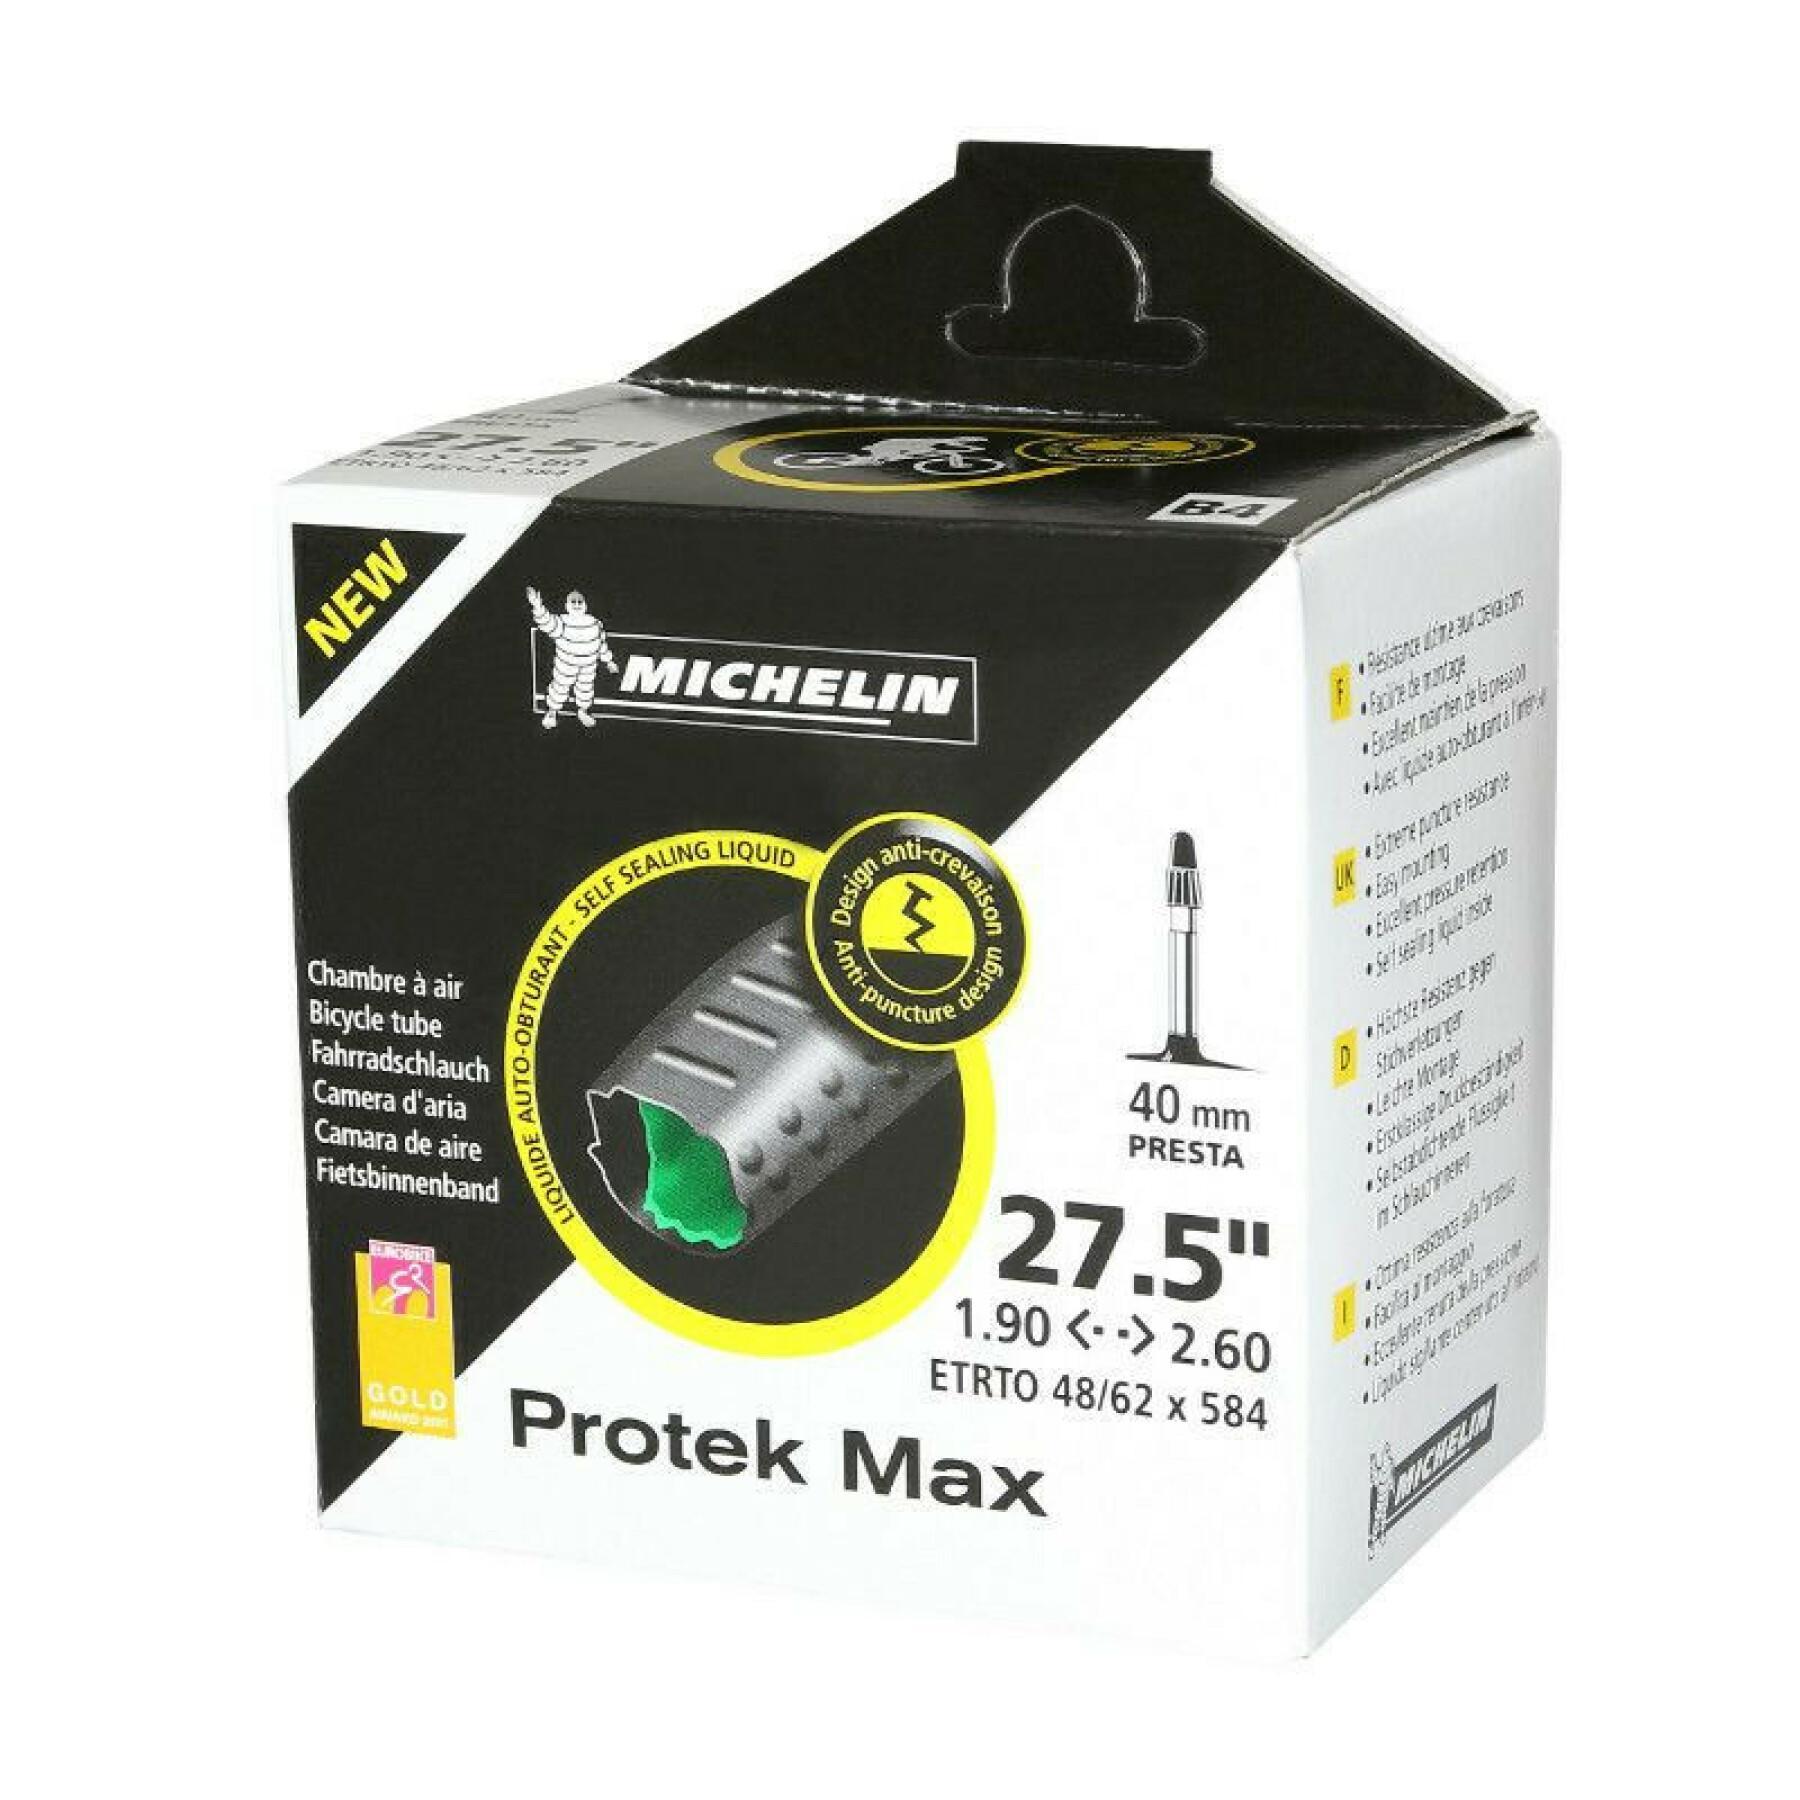 Schlauch mit Presta-Ventil und Pannenschutzflüssigkeit Michelin protek max 27.5 x 1.90/2.30